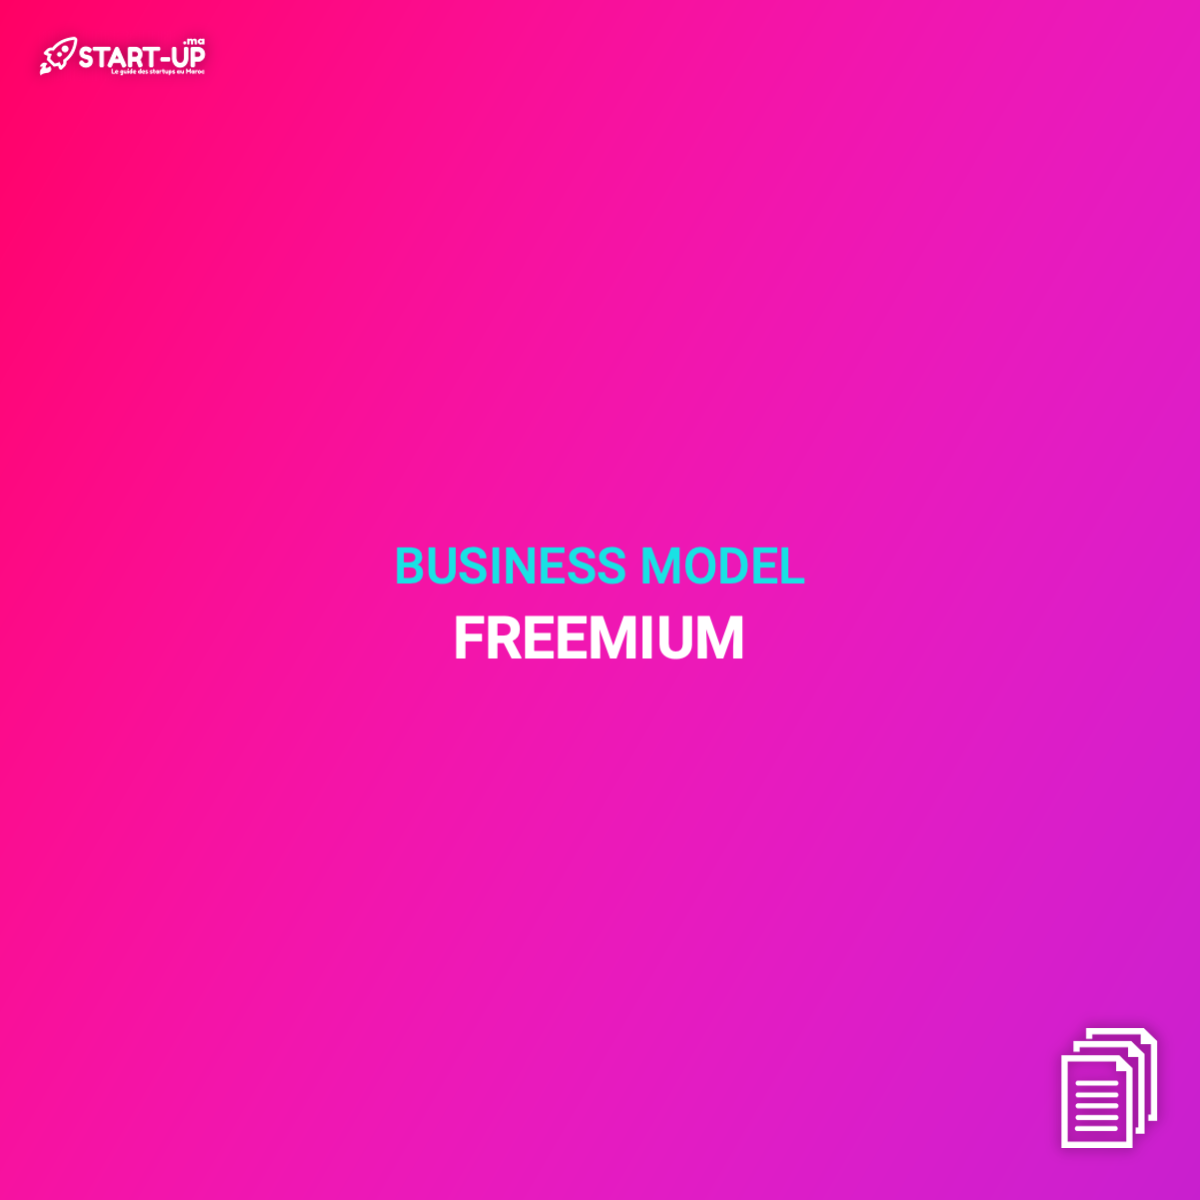 Freemium Business Model